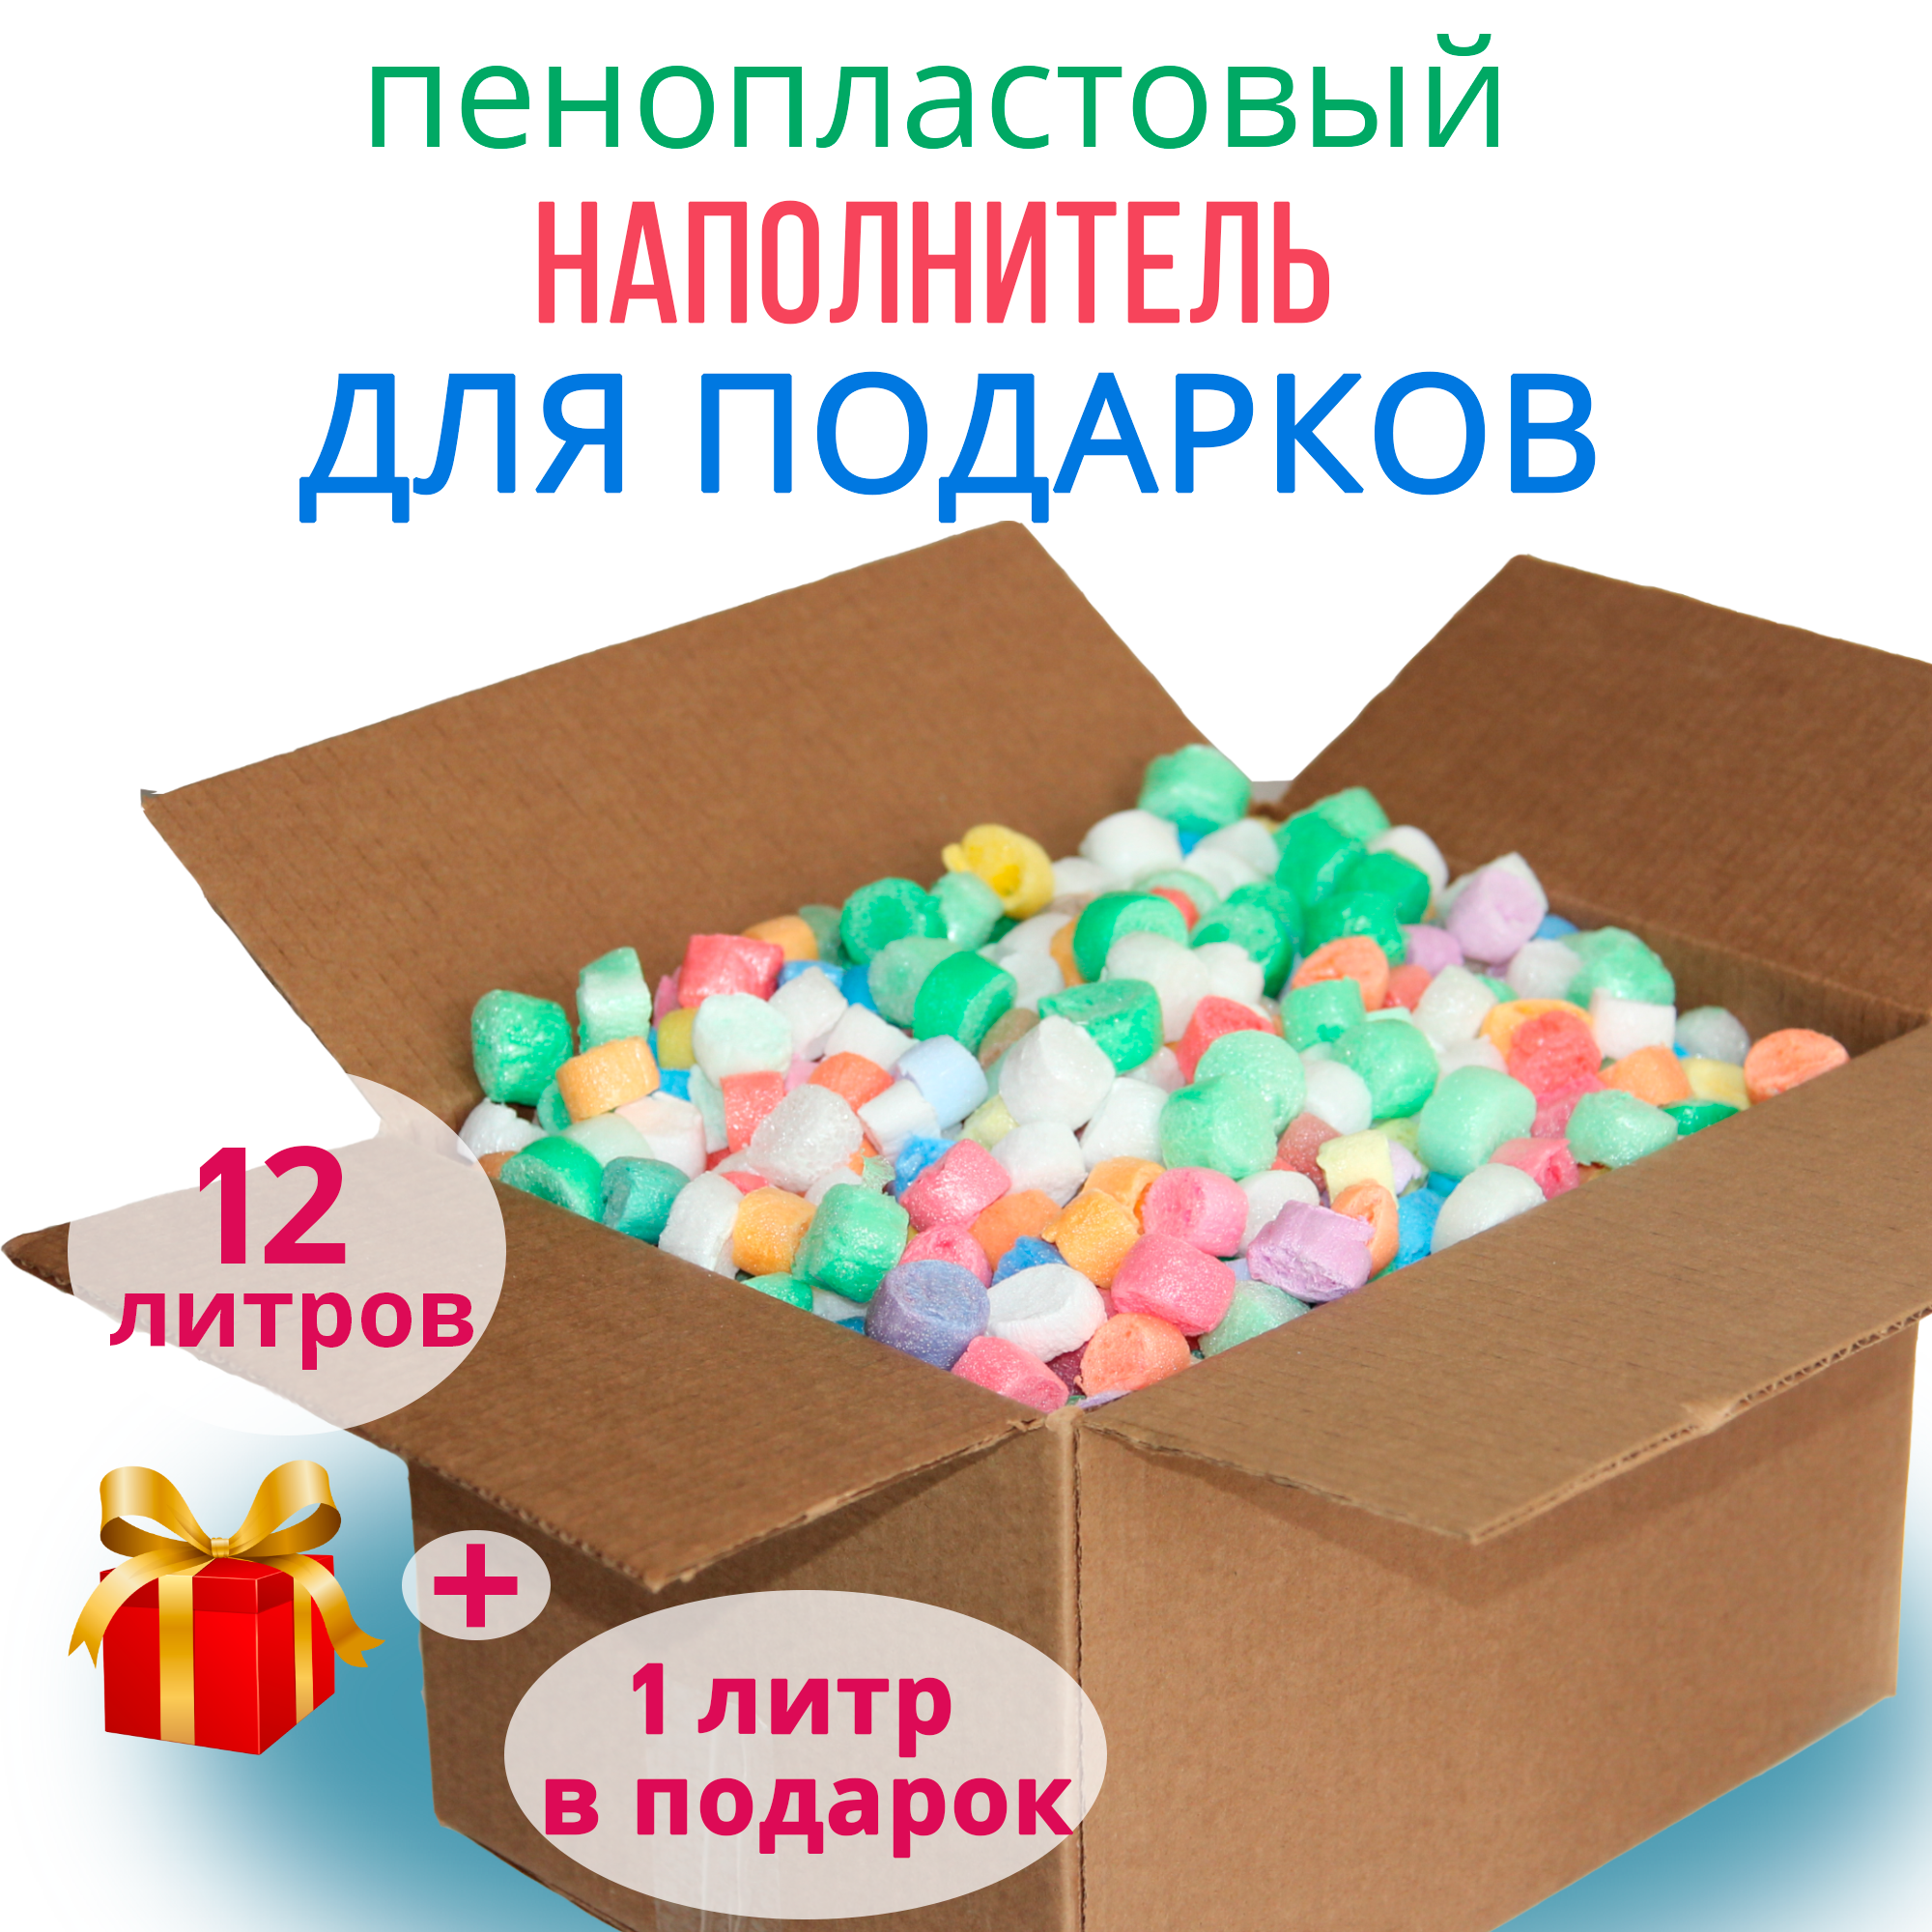 Наполнитель пенопластовый Яркий 12 л (пенополистирольный ) упаковочный праздничный разноцветный для подарков и коробок